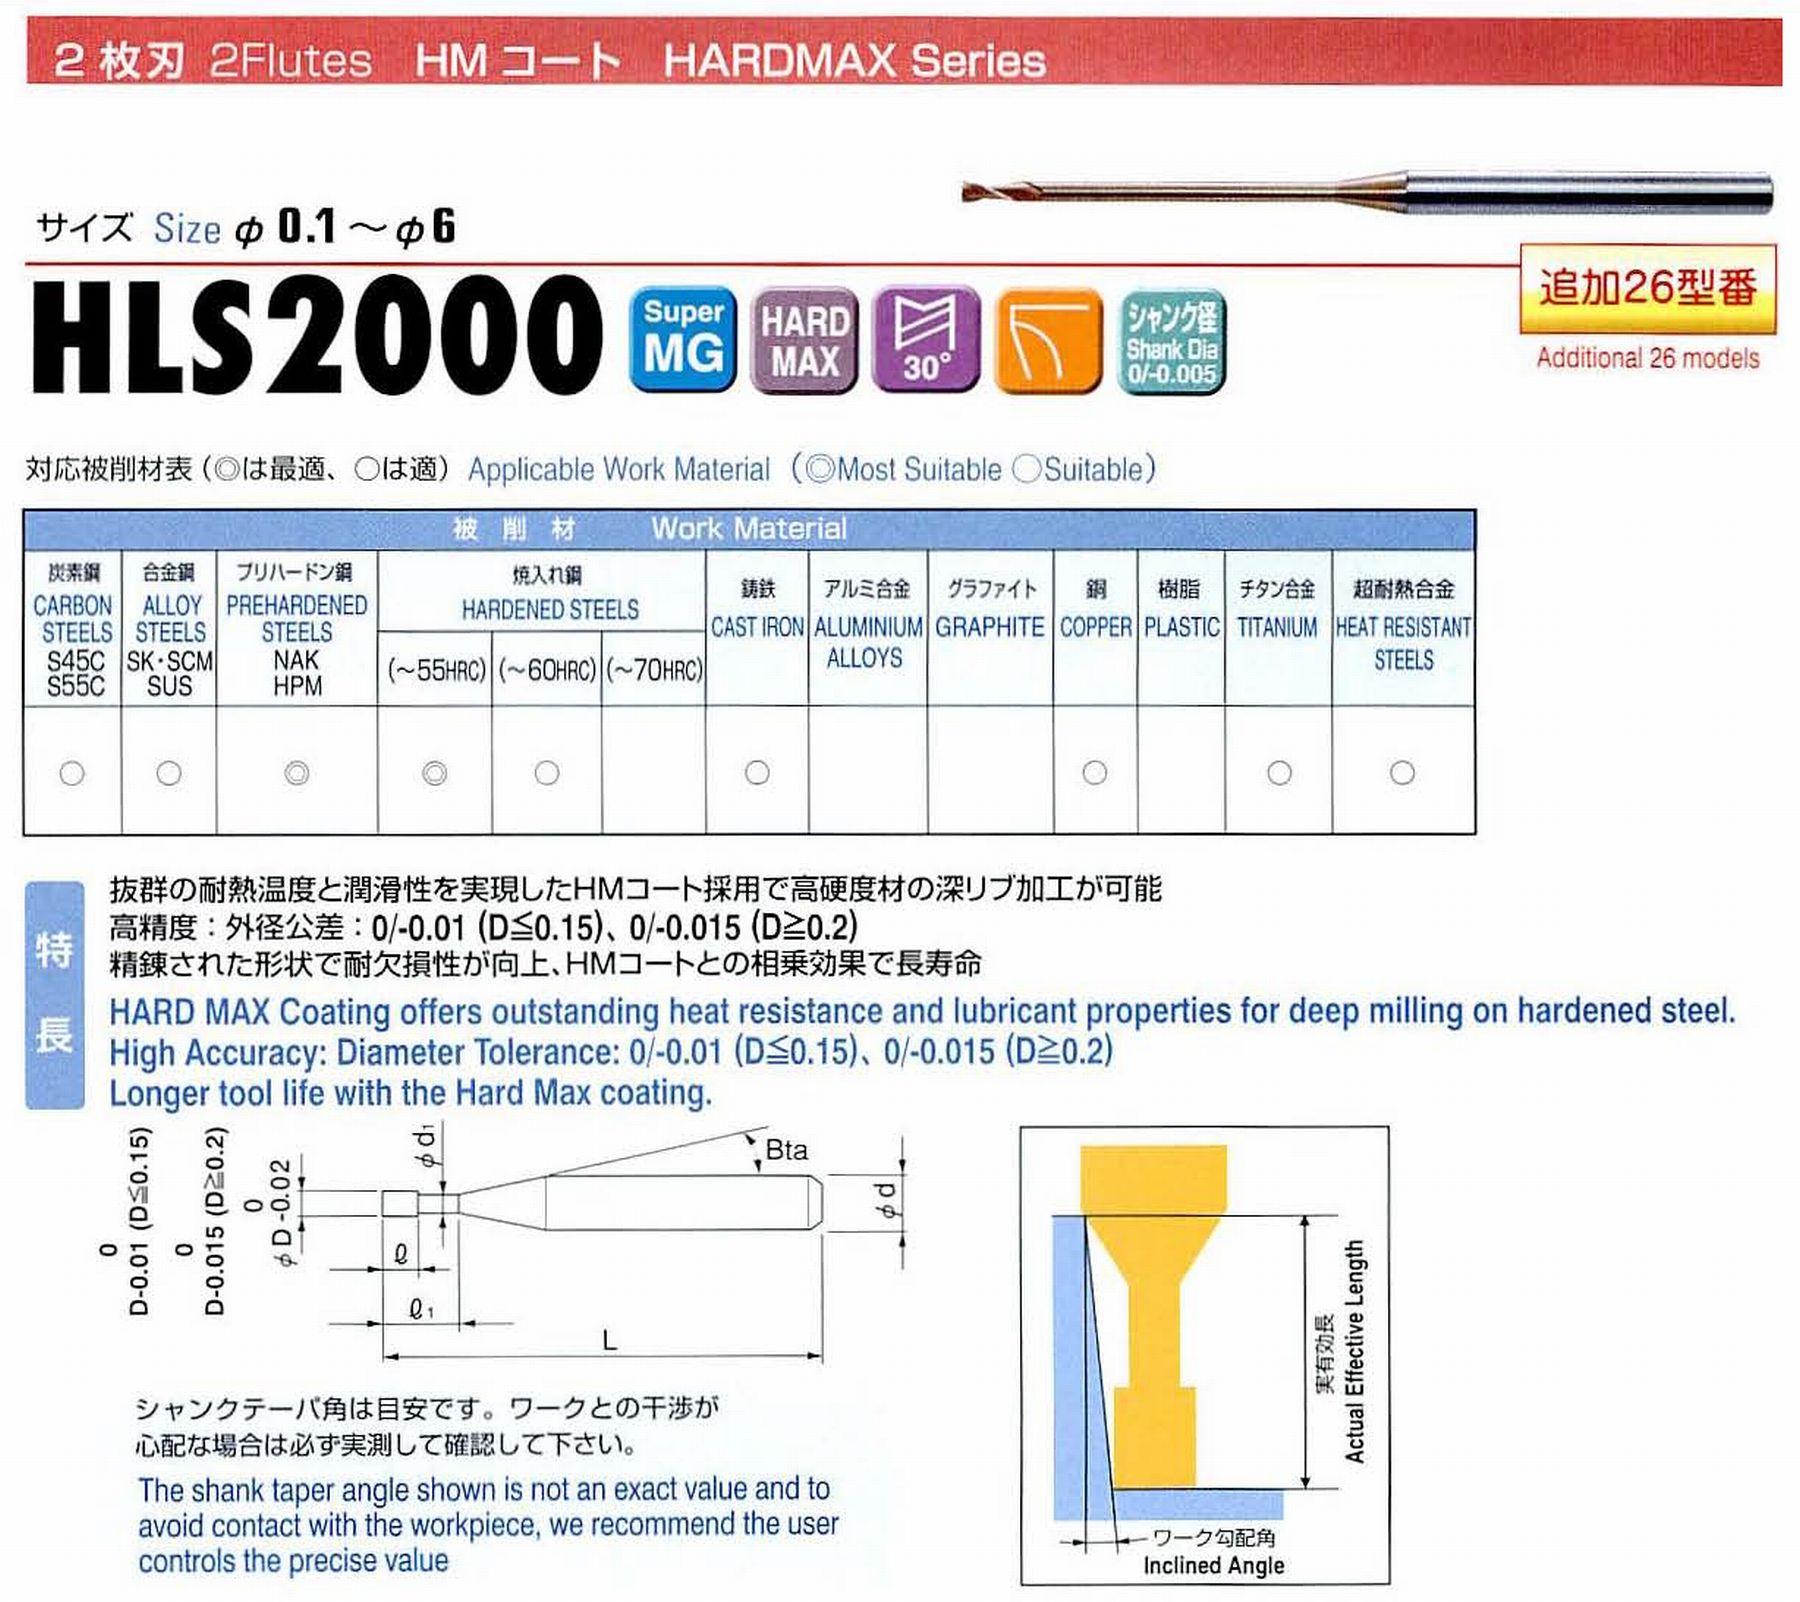 ユニオンツール 2枚刃 HLS2005-50 外径0.5 有効長5 刃長0.7 首径0.48 シャンクテーパ角16° 全長45 シャンク径4